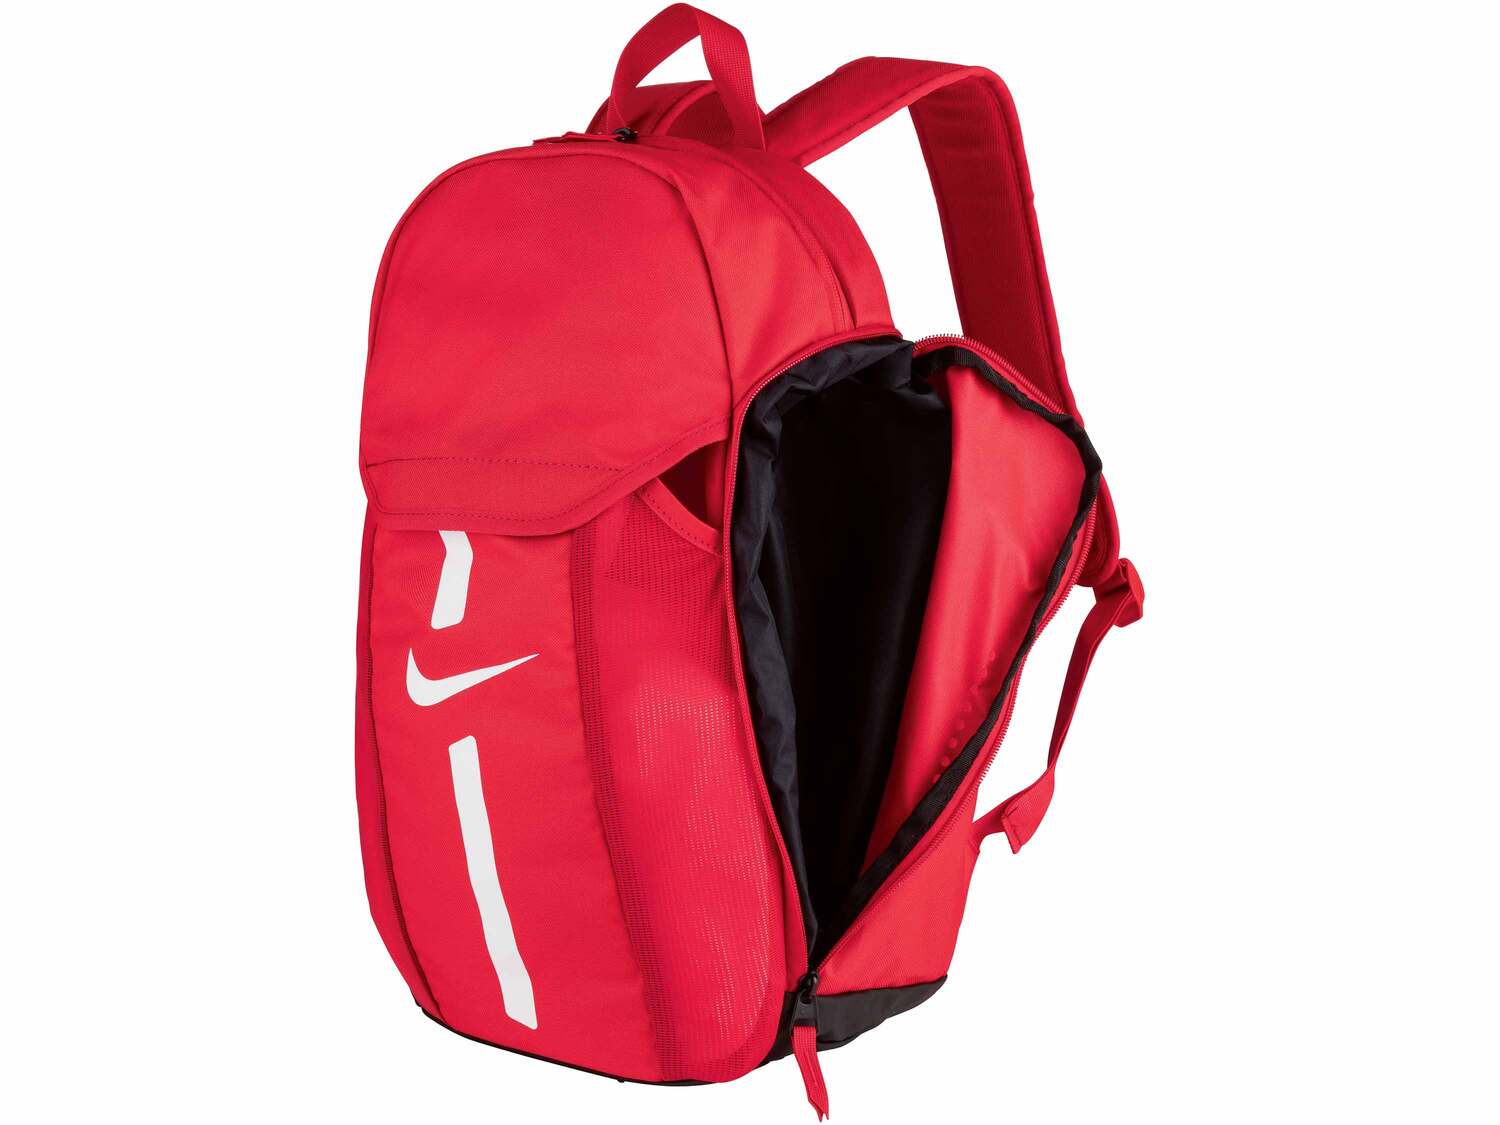 Plecak NIKE , cena 59,90 PLN 
różne wzory 
- funkcjonalny plecak z przgr&oacute;dkami ...